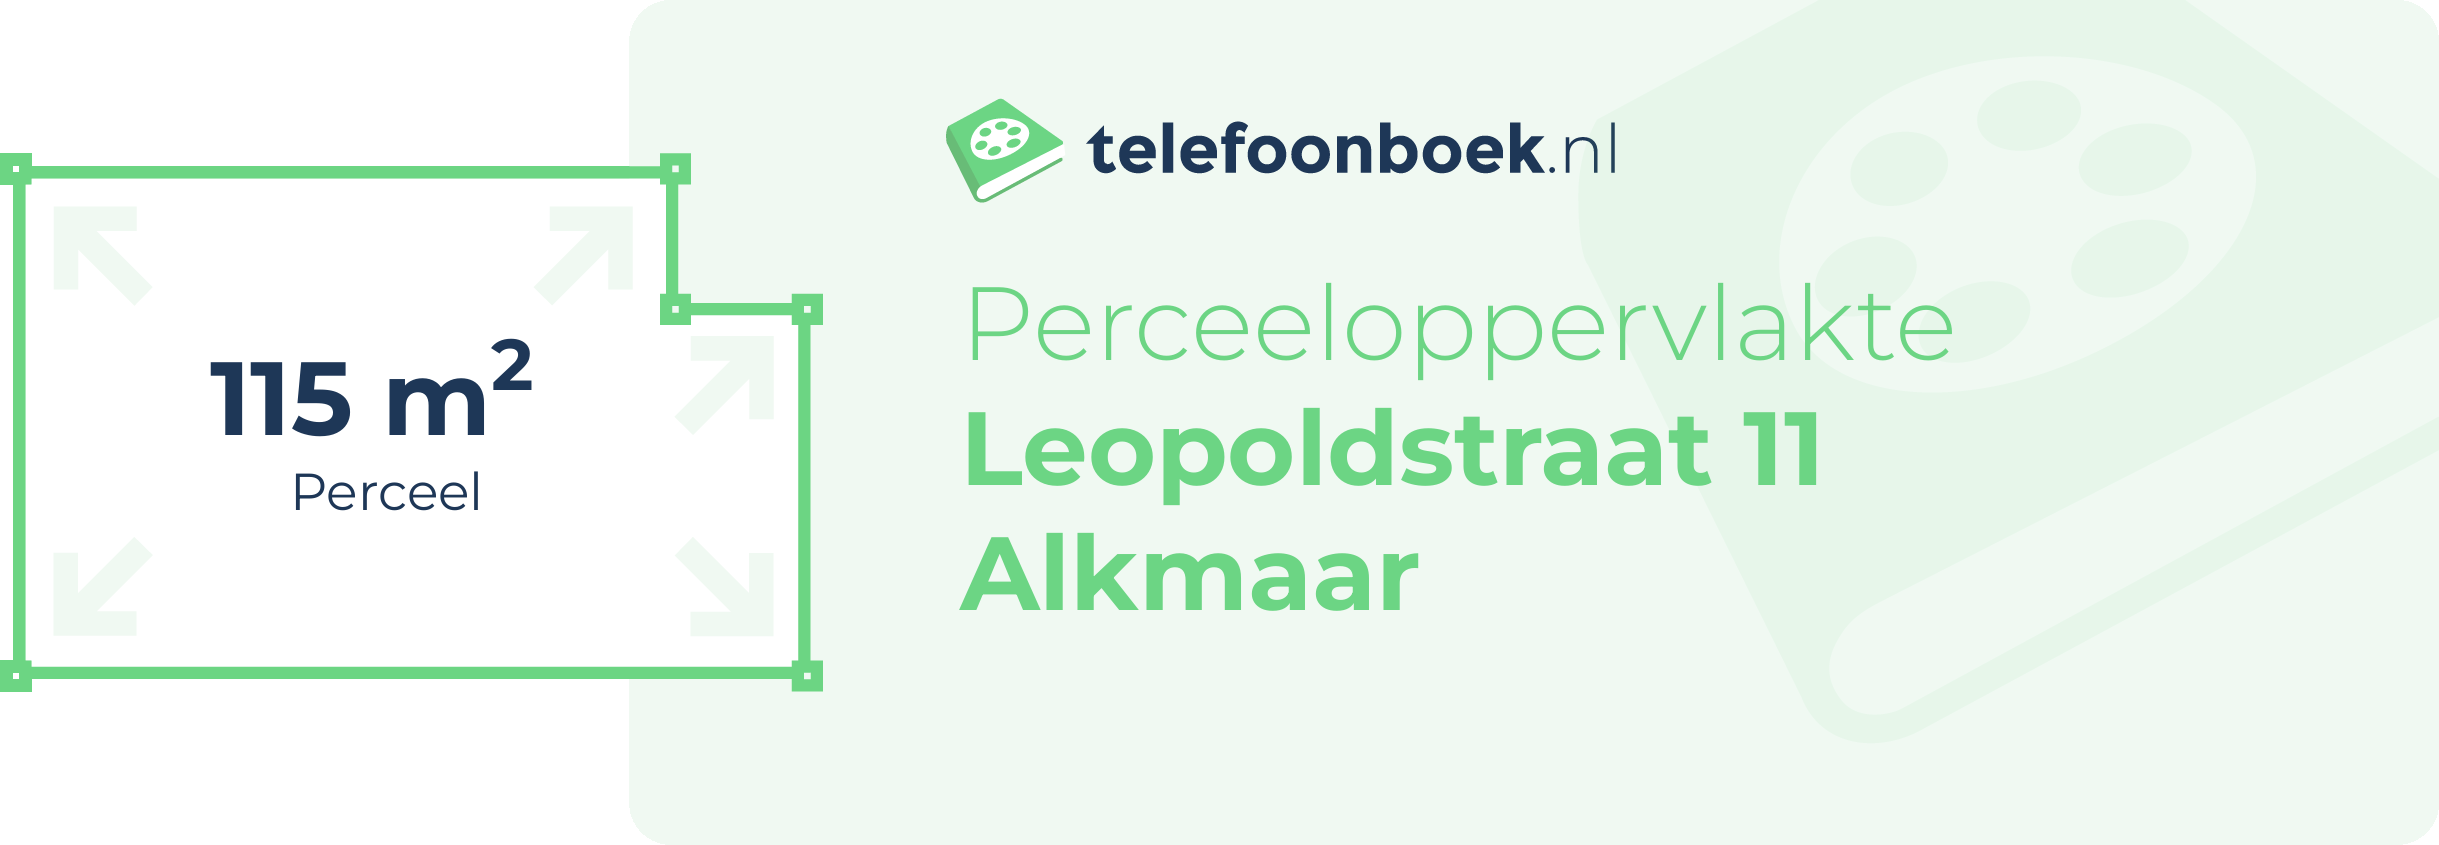 Perceeloppervlakte Leopoldstraat 11 Alkmaar